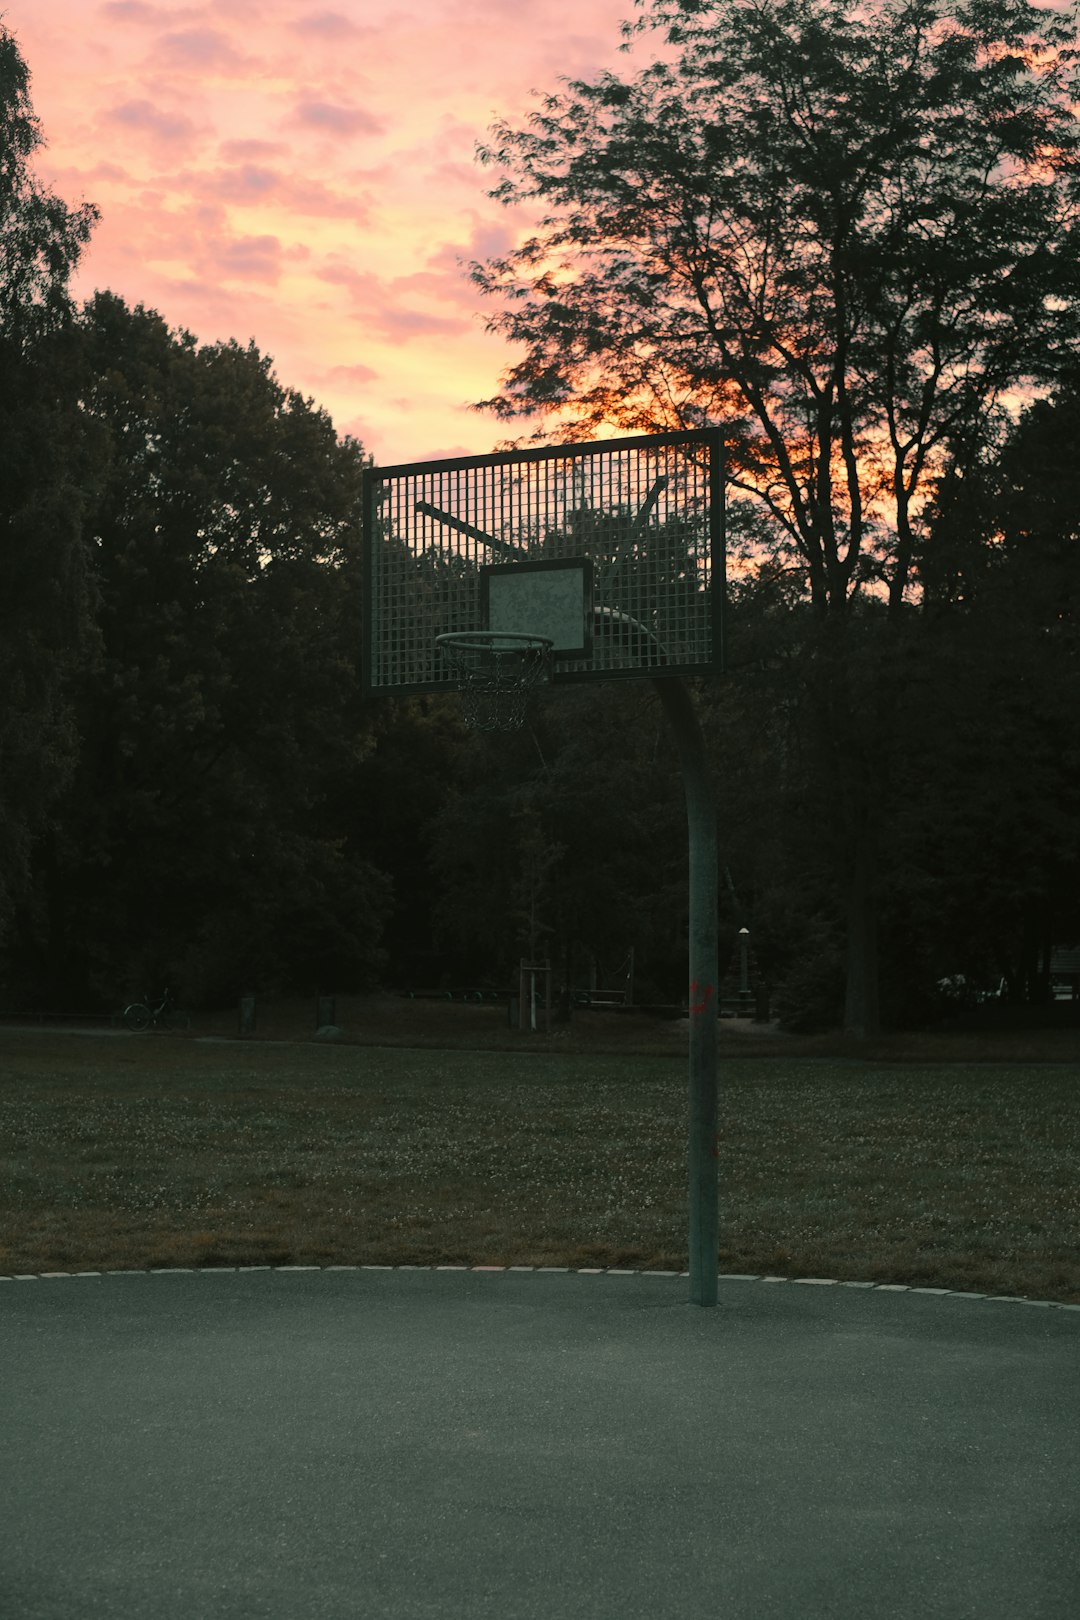 black metal basketball hoop on green grass field during sunset